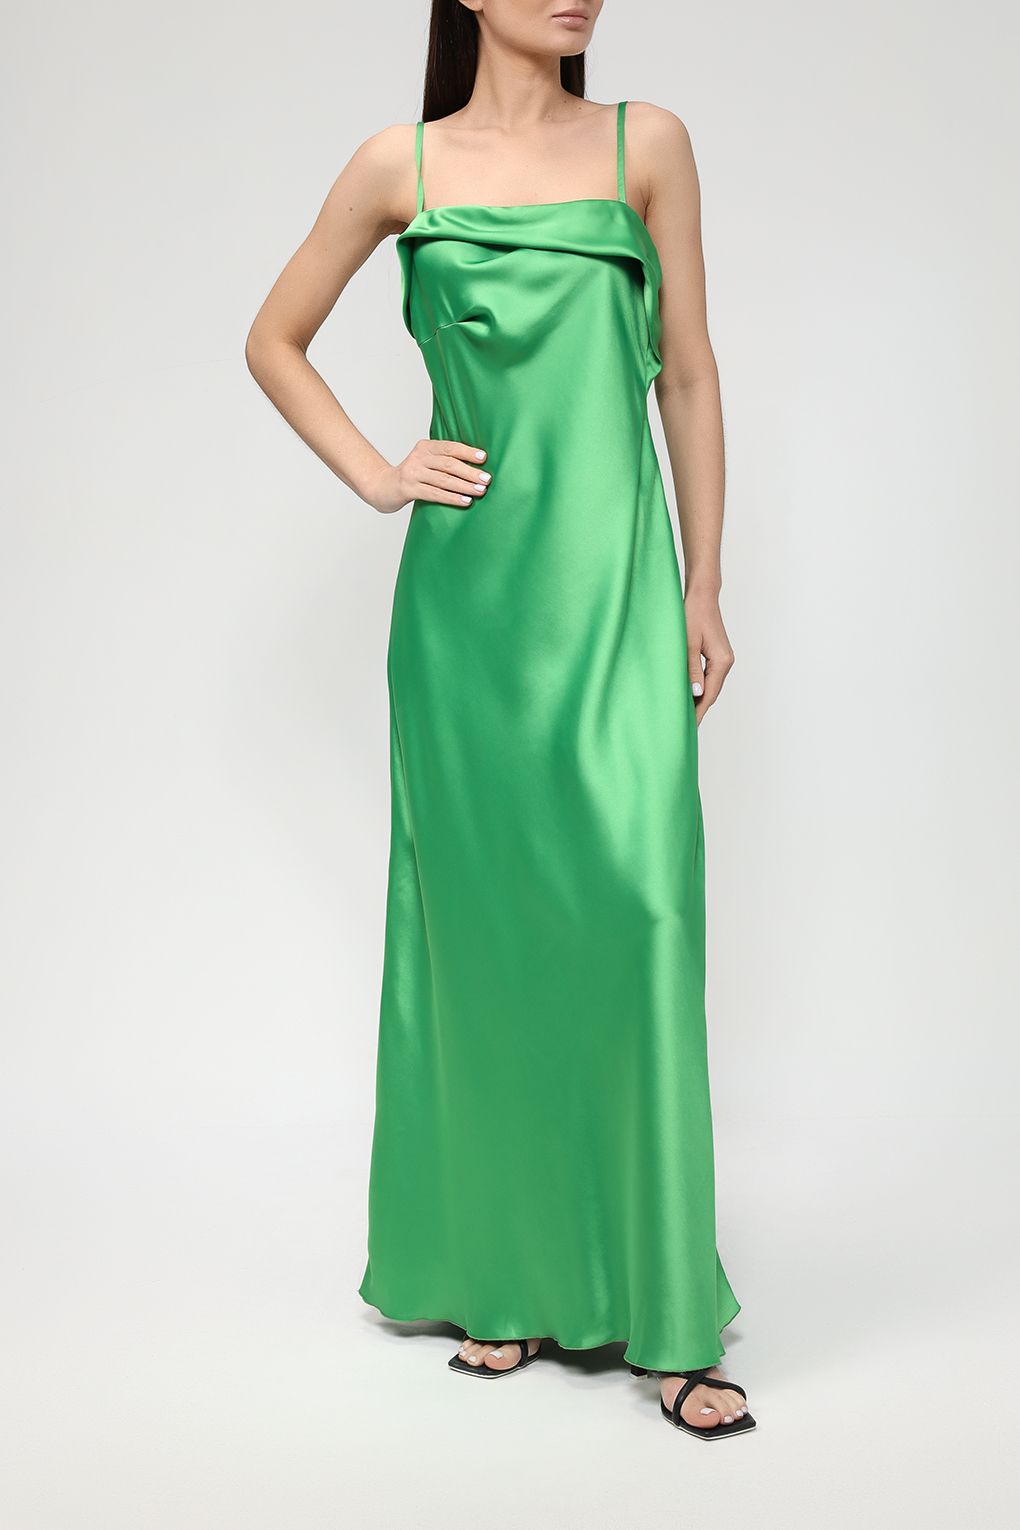 Платье женское Belucci BL23045331-004 зеленое L